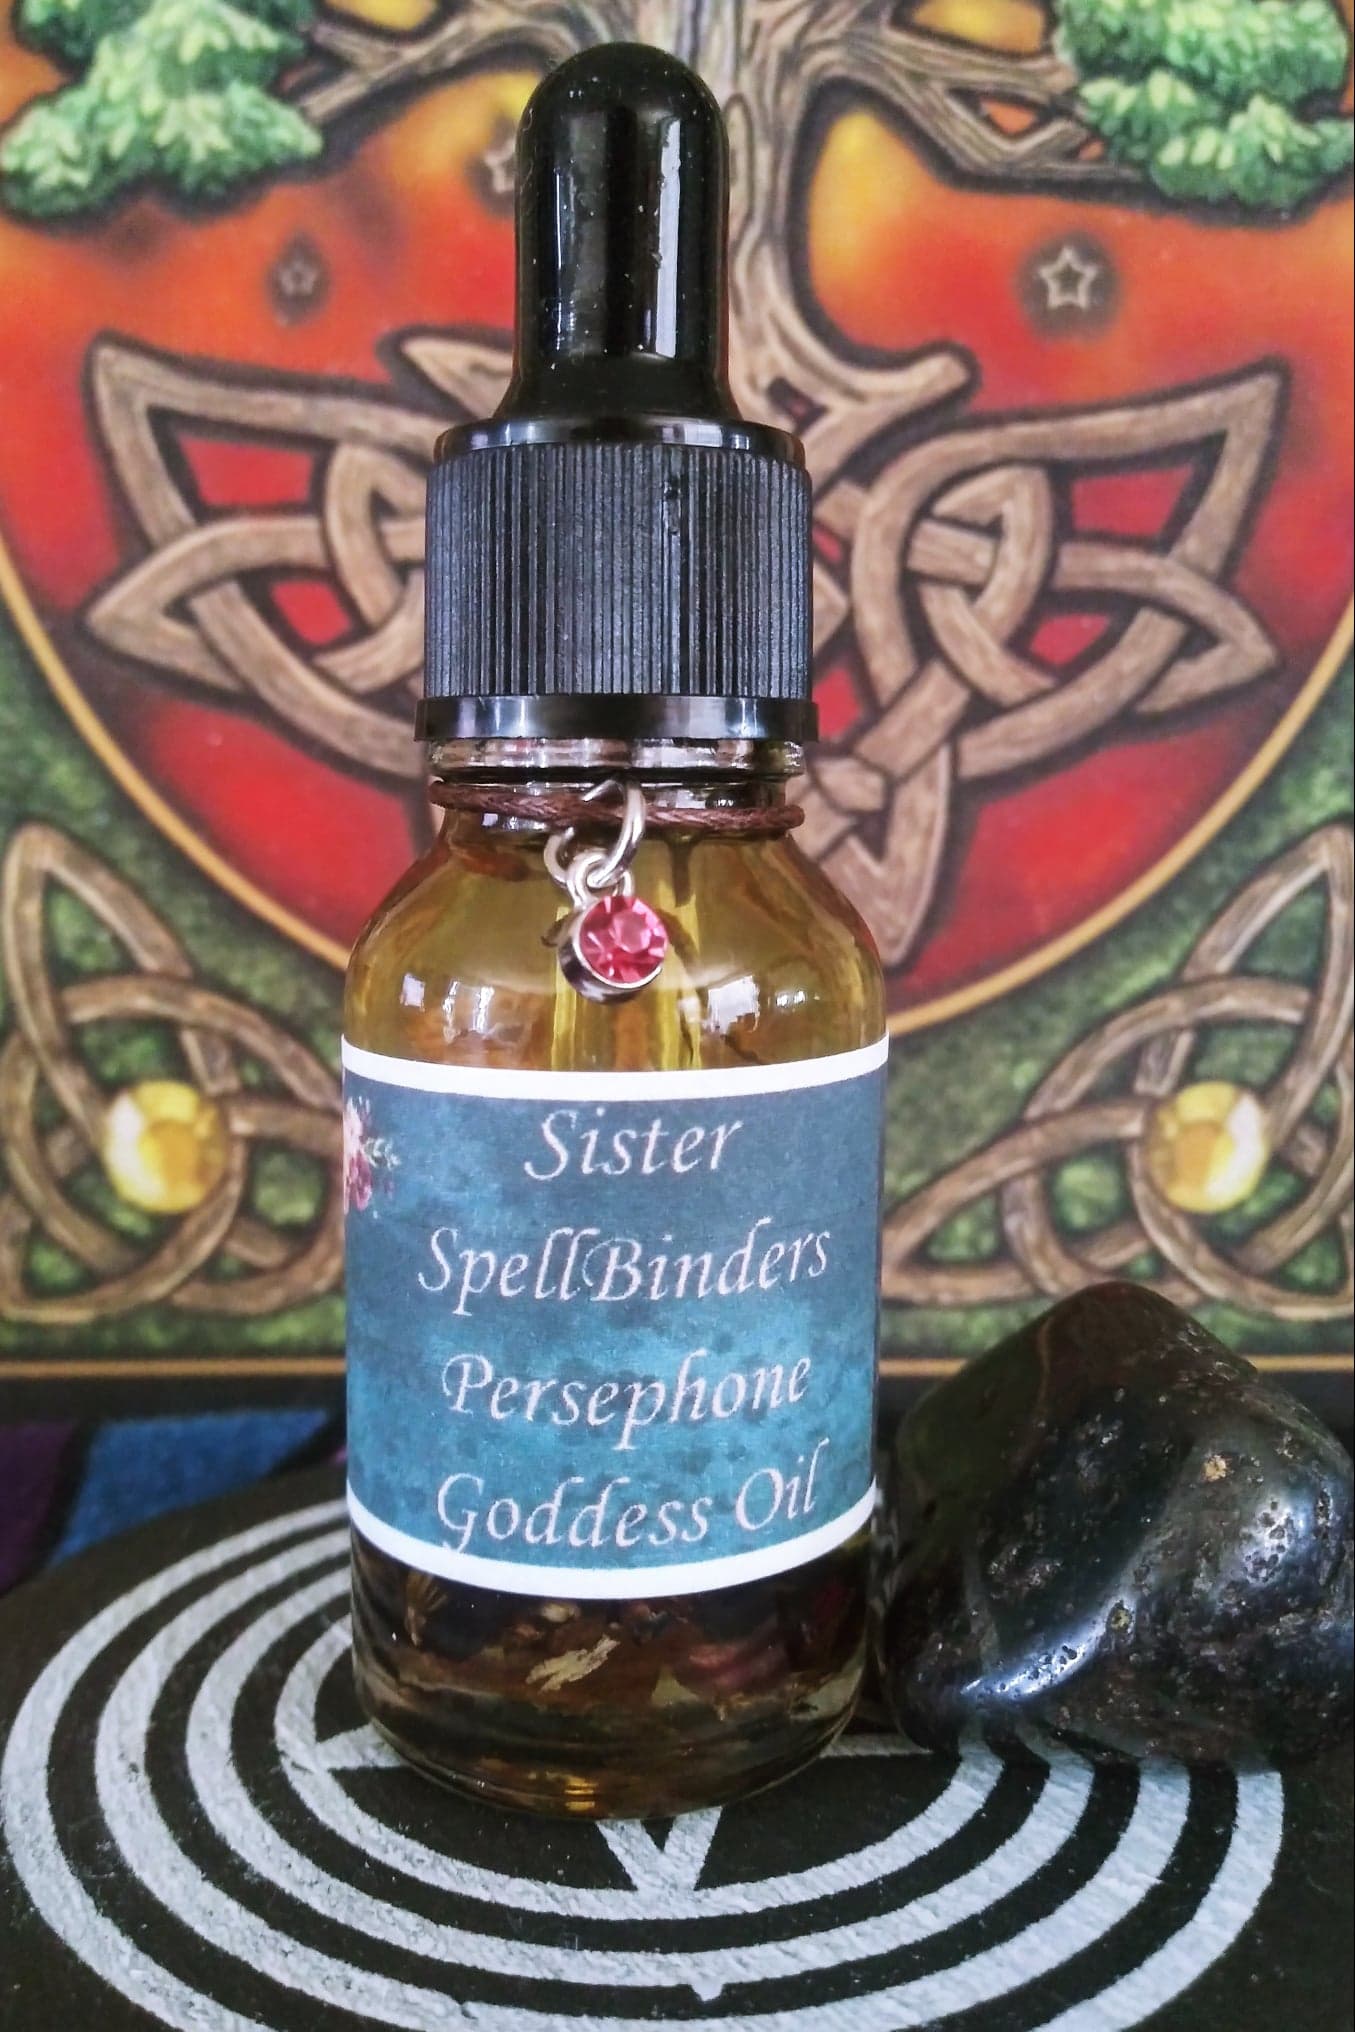 Sister SpellBinders Persephone Goddess Oil